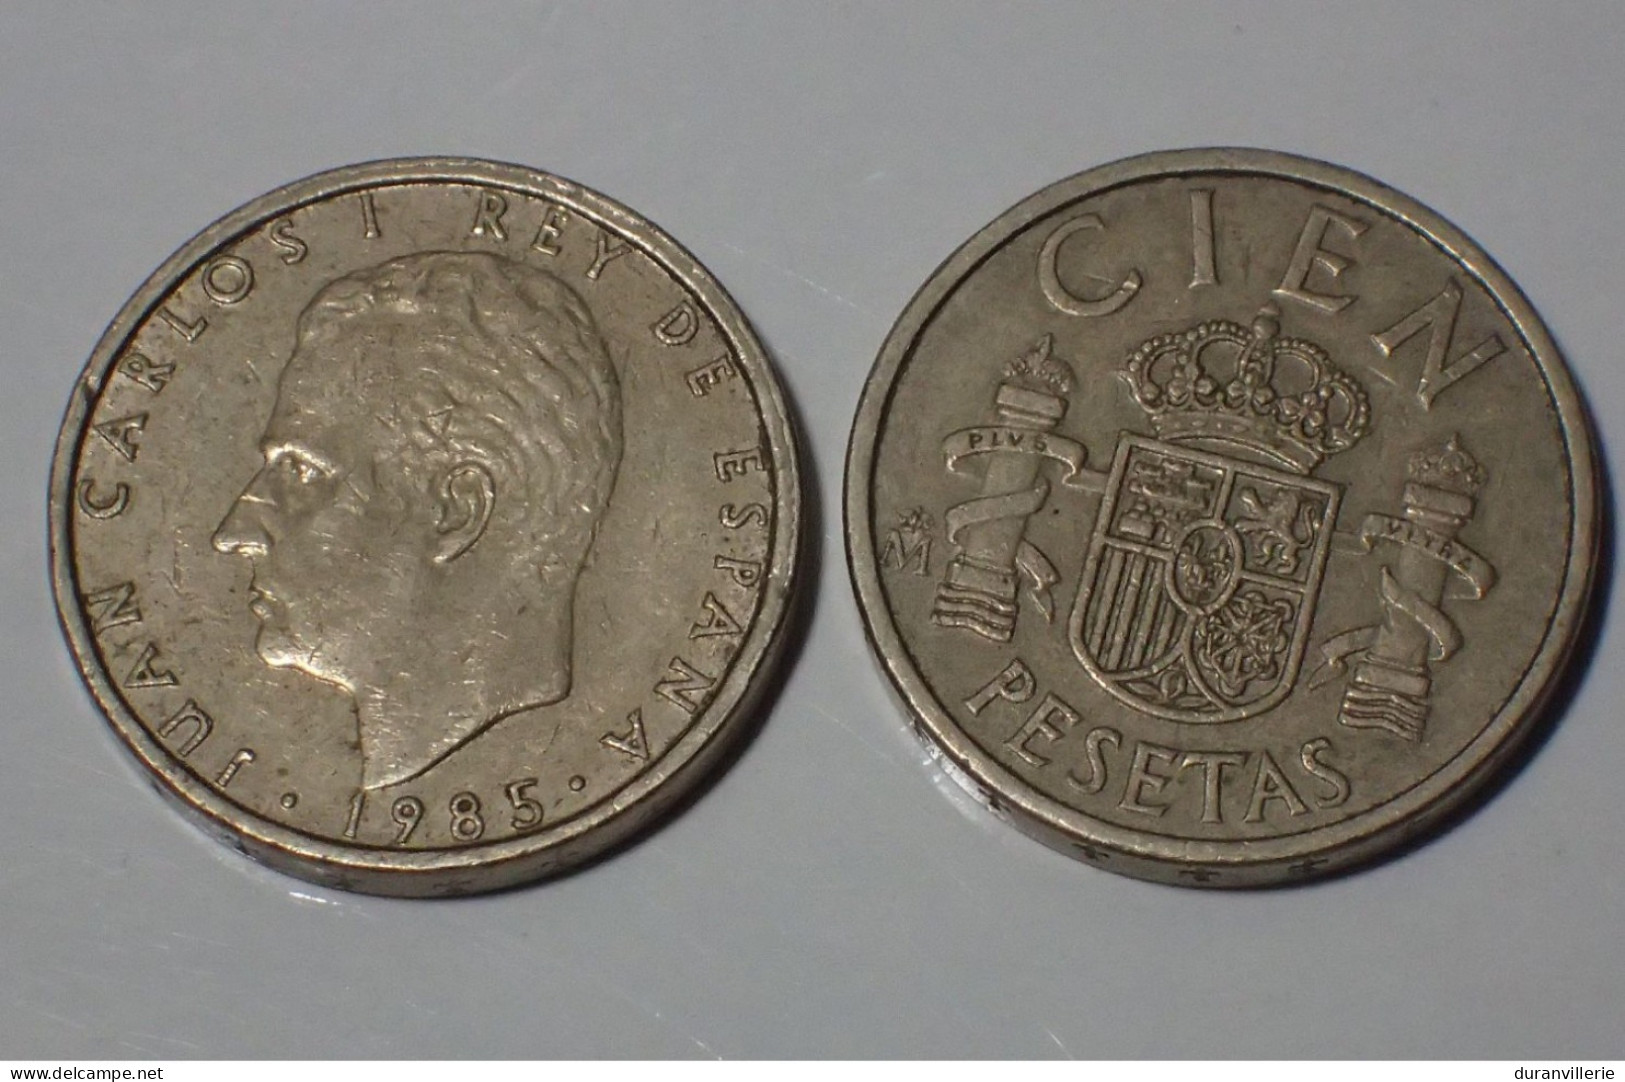 Spagna - Spain - Espana - Spanien 1985 - 100 Pesetas, KM 826 - 100 Pesetas